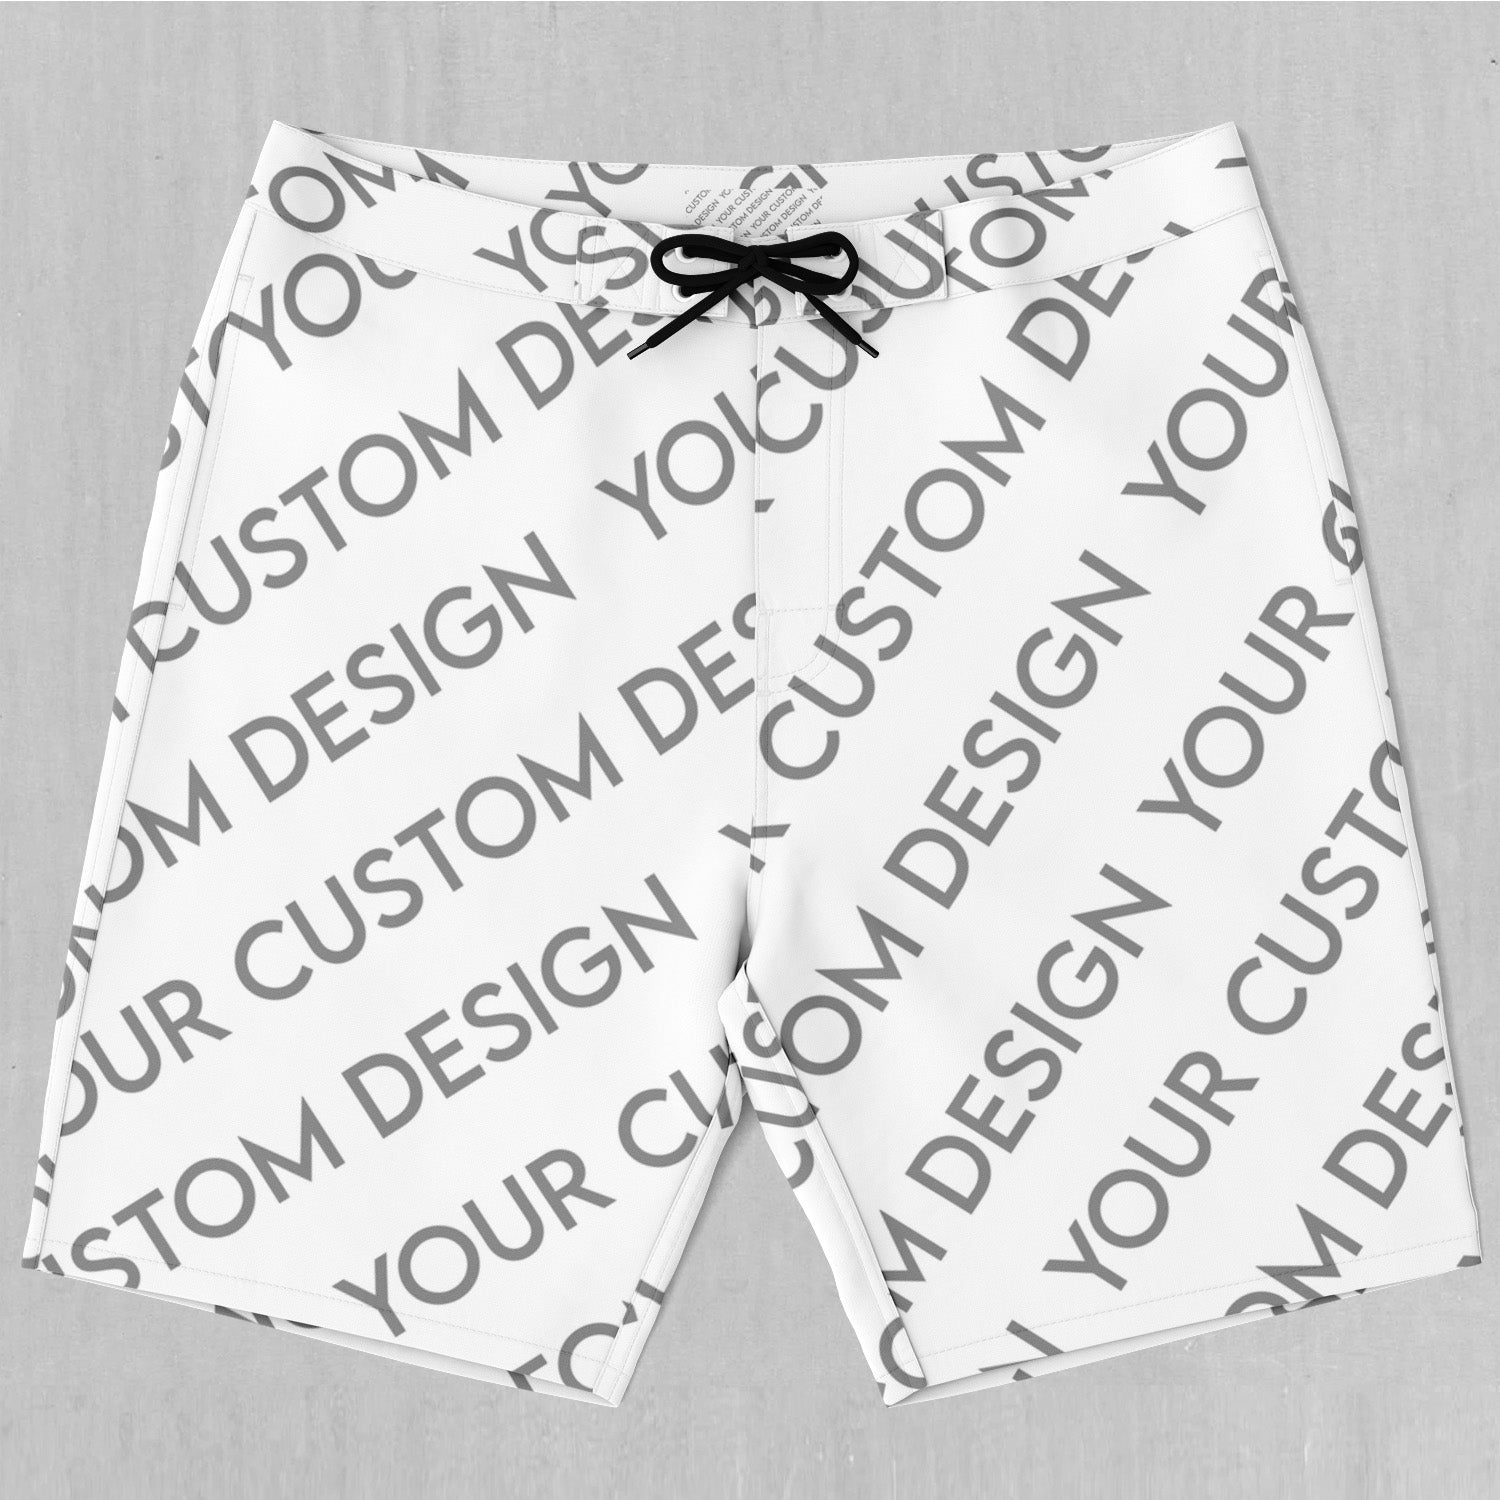 Custom Board Shorts